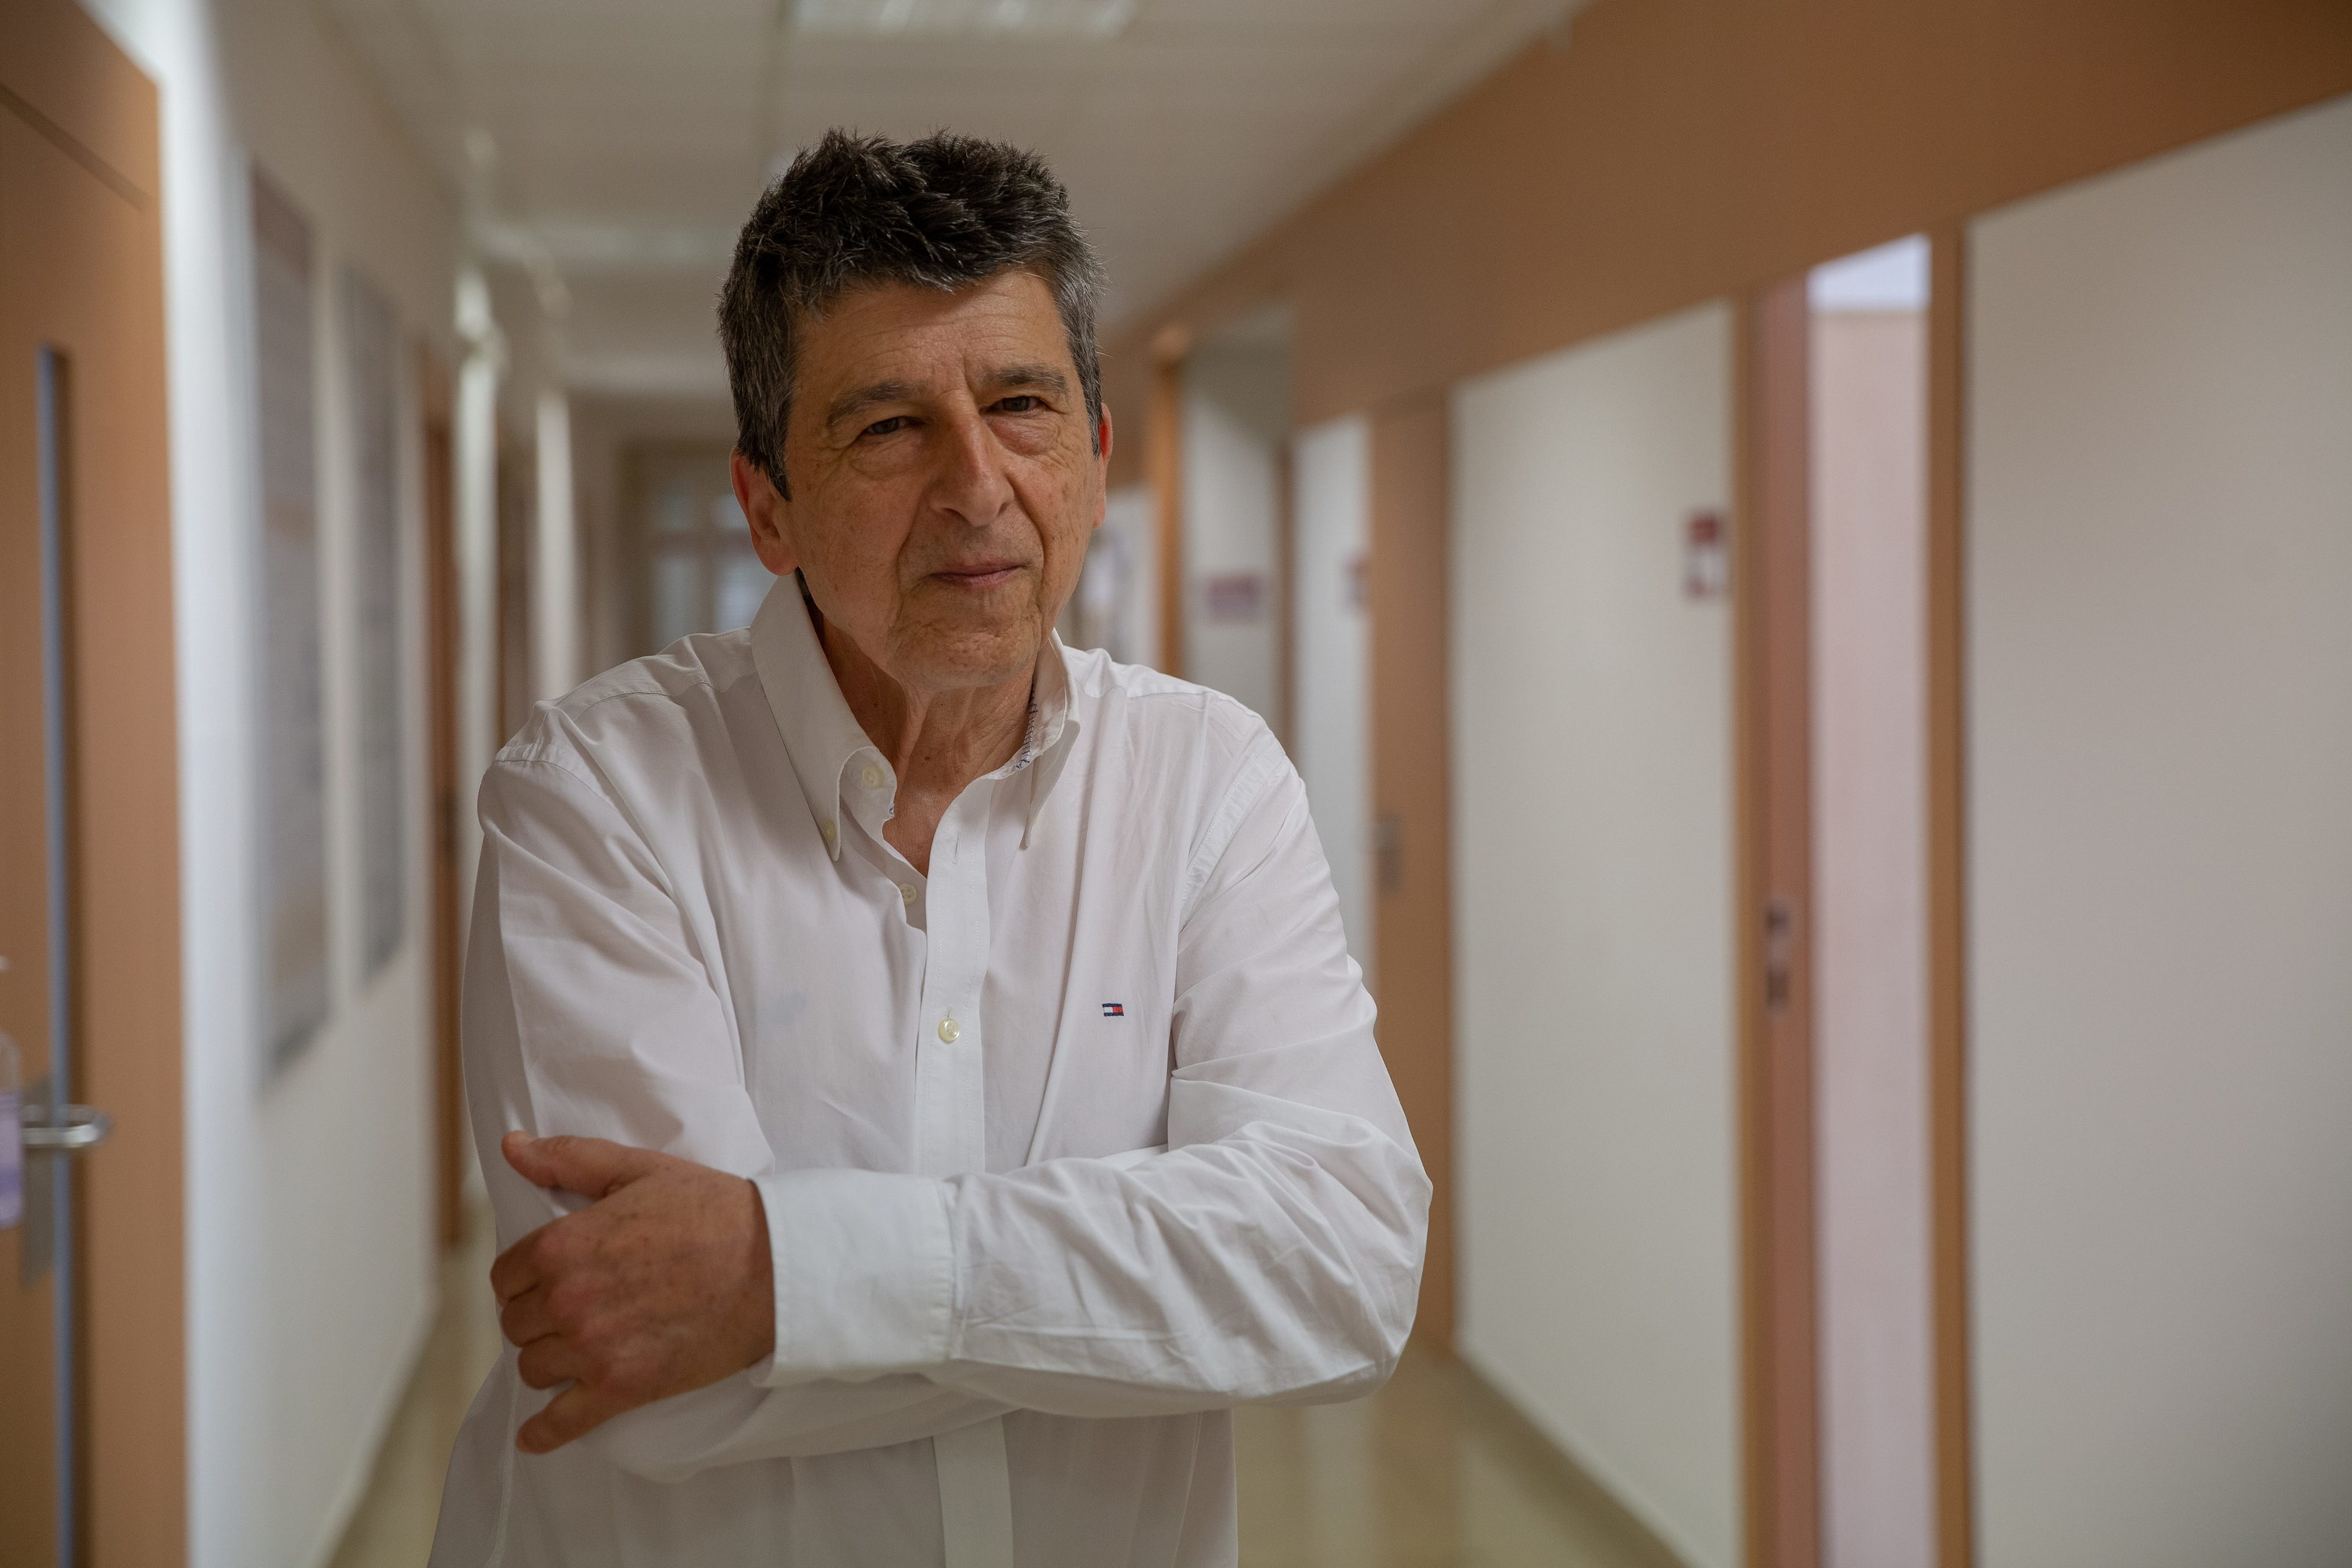 Luis Colomer, de 68 aos, en uno de los pasillos de la Clnica Universidad de Navarra donde acude a recibir su tratamiento an en ensayo.